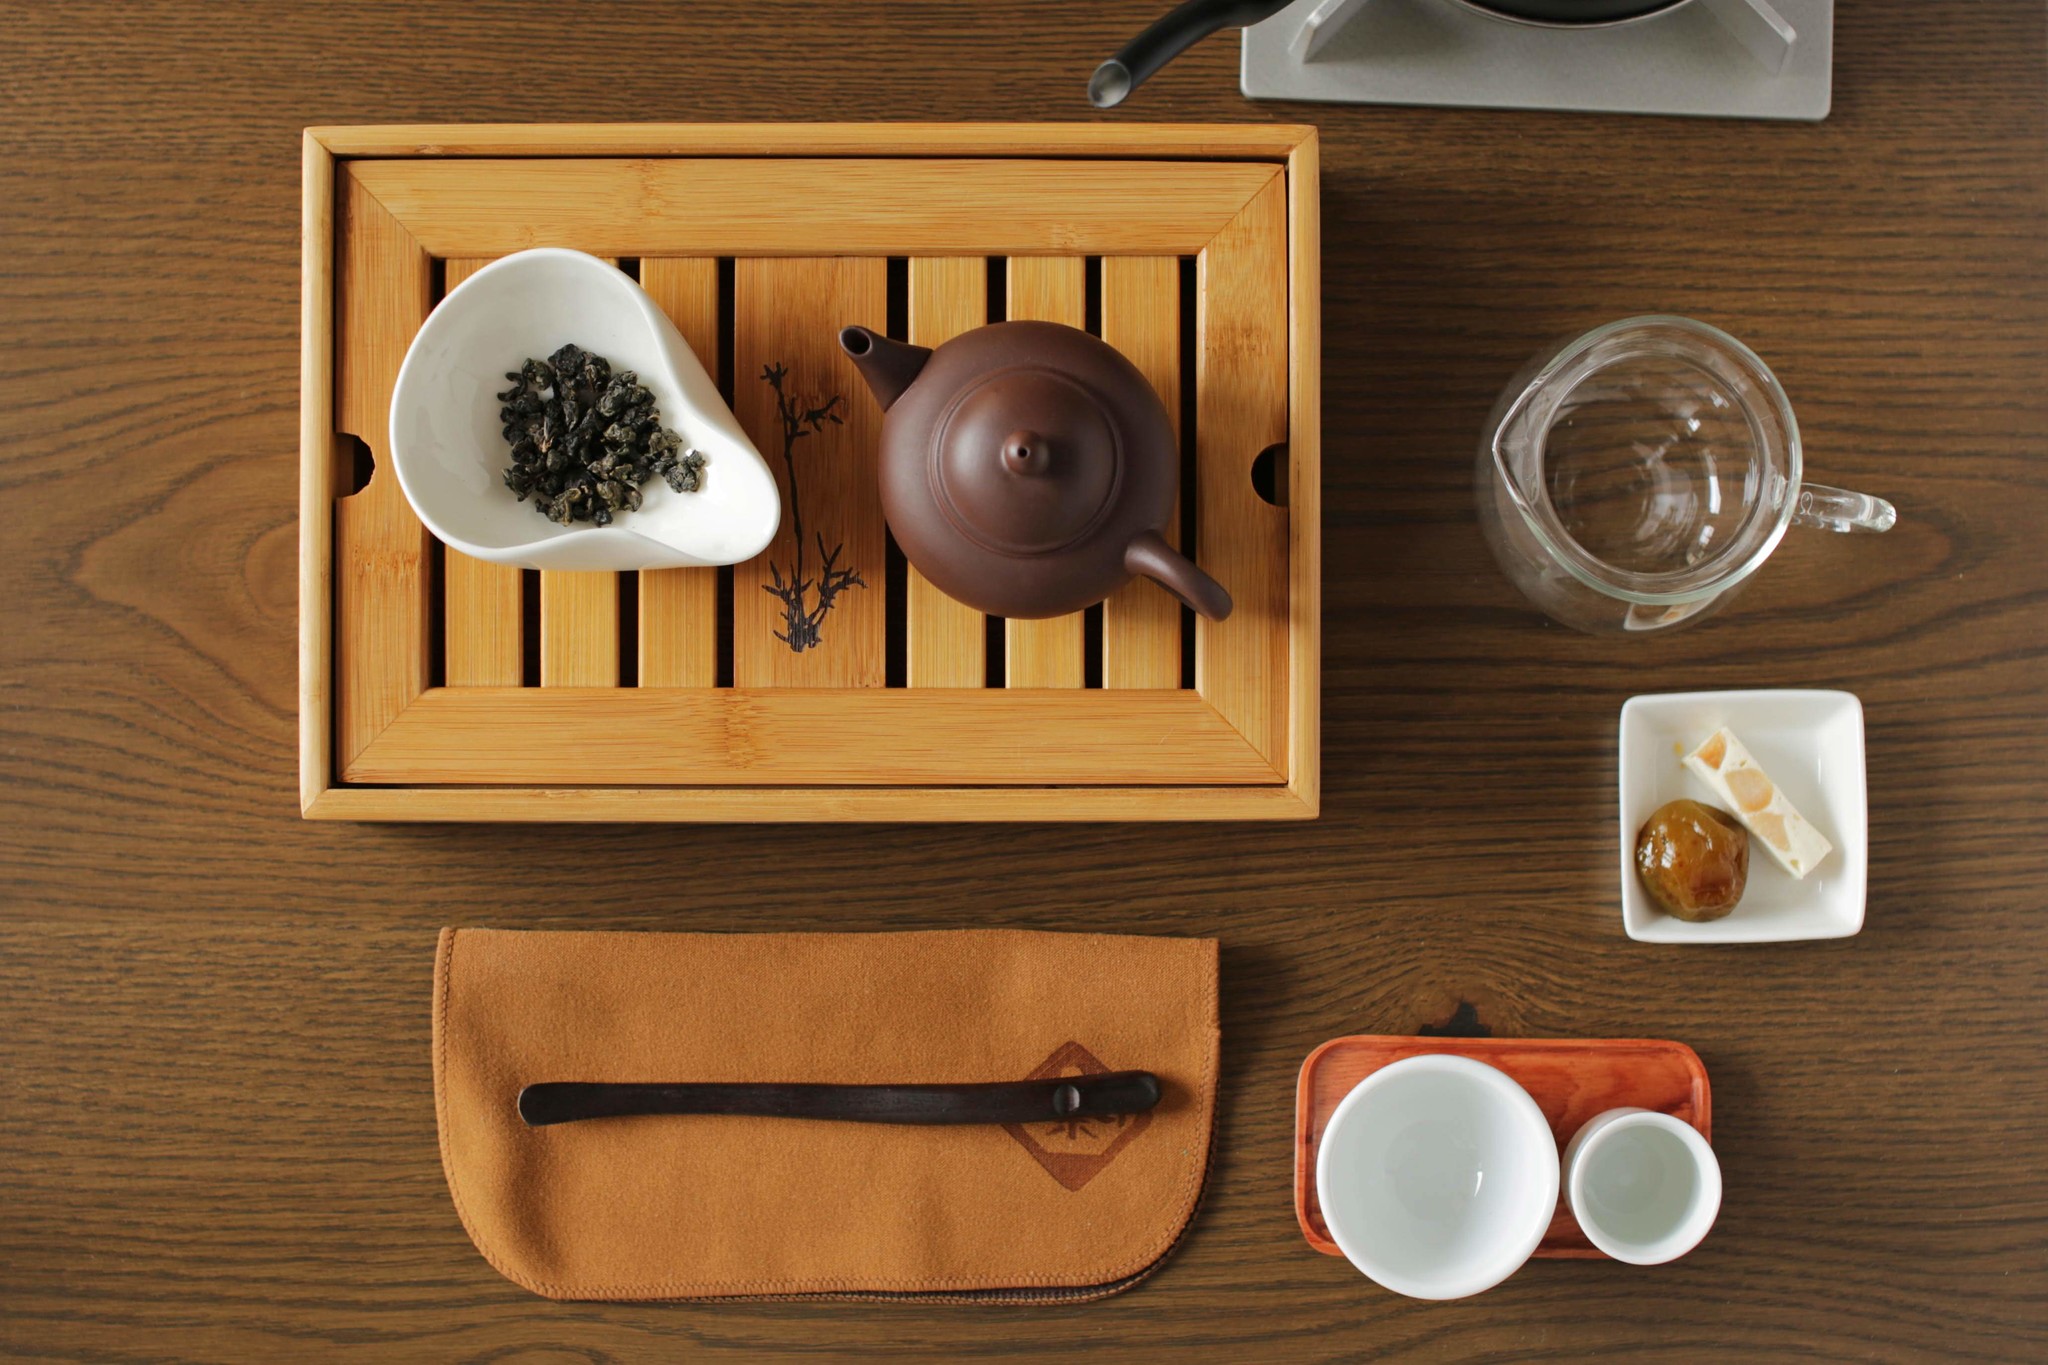 台湾茶は自分で淹れるともっと美味しくなる 珍しい台湾スタイル 工夫茶 で台湾茶を楽しめる台湾茶カフェがオープン 台湾茶藝館 狐月庵のプレスリリース